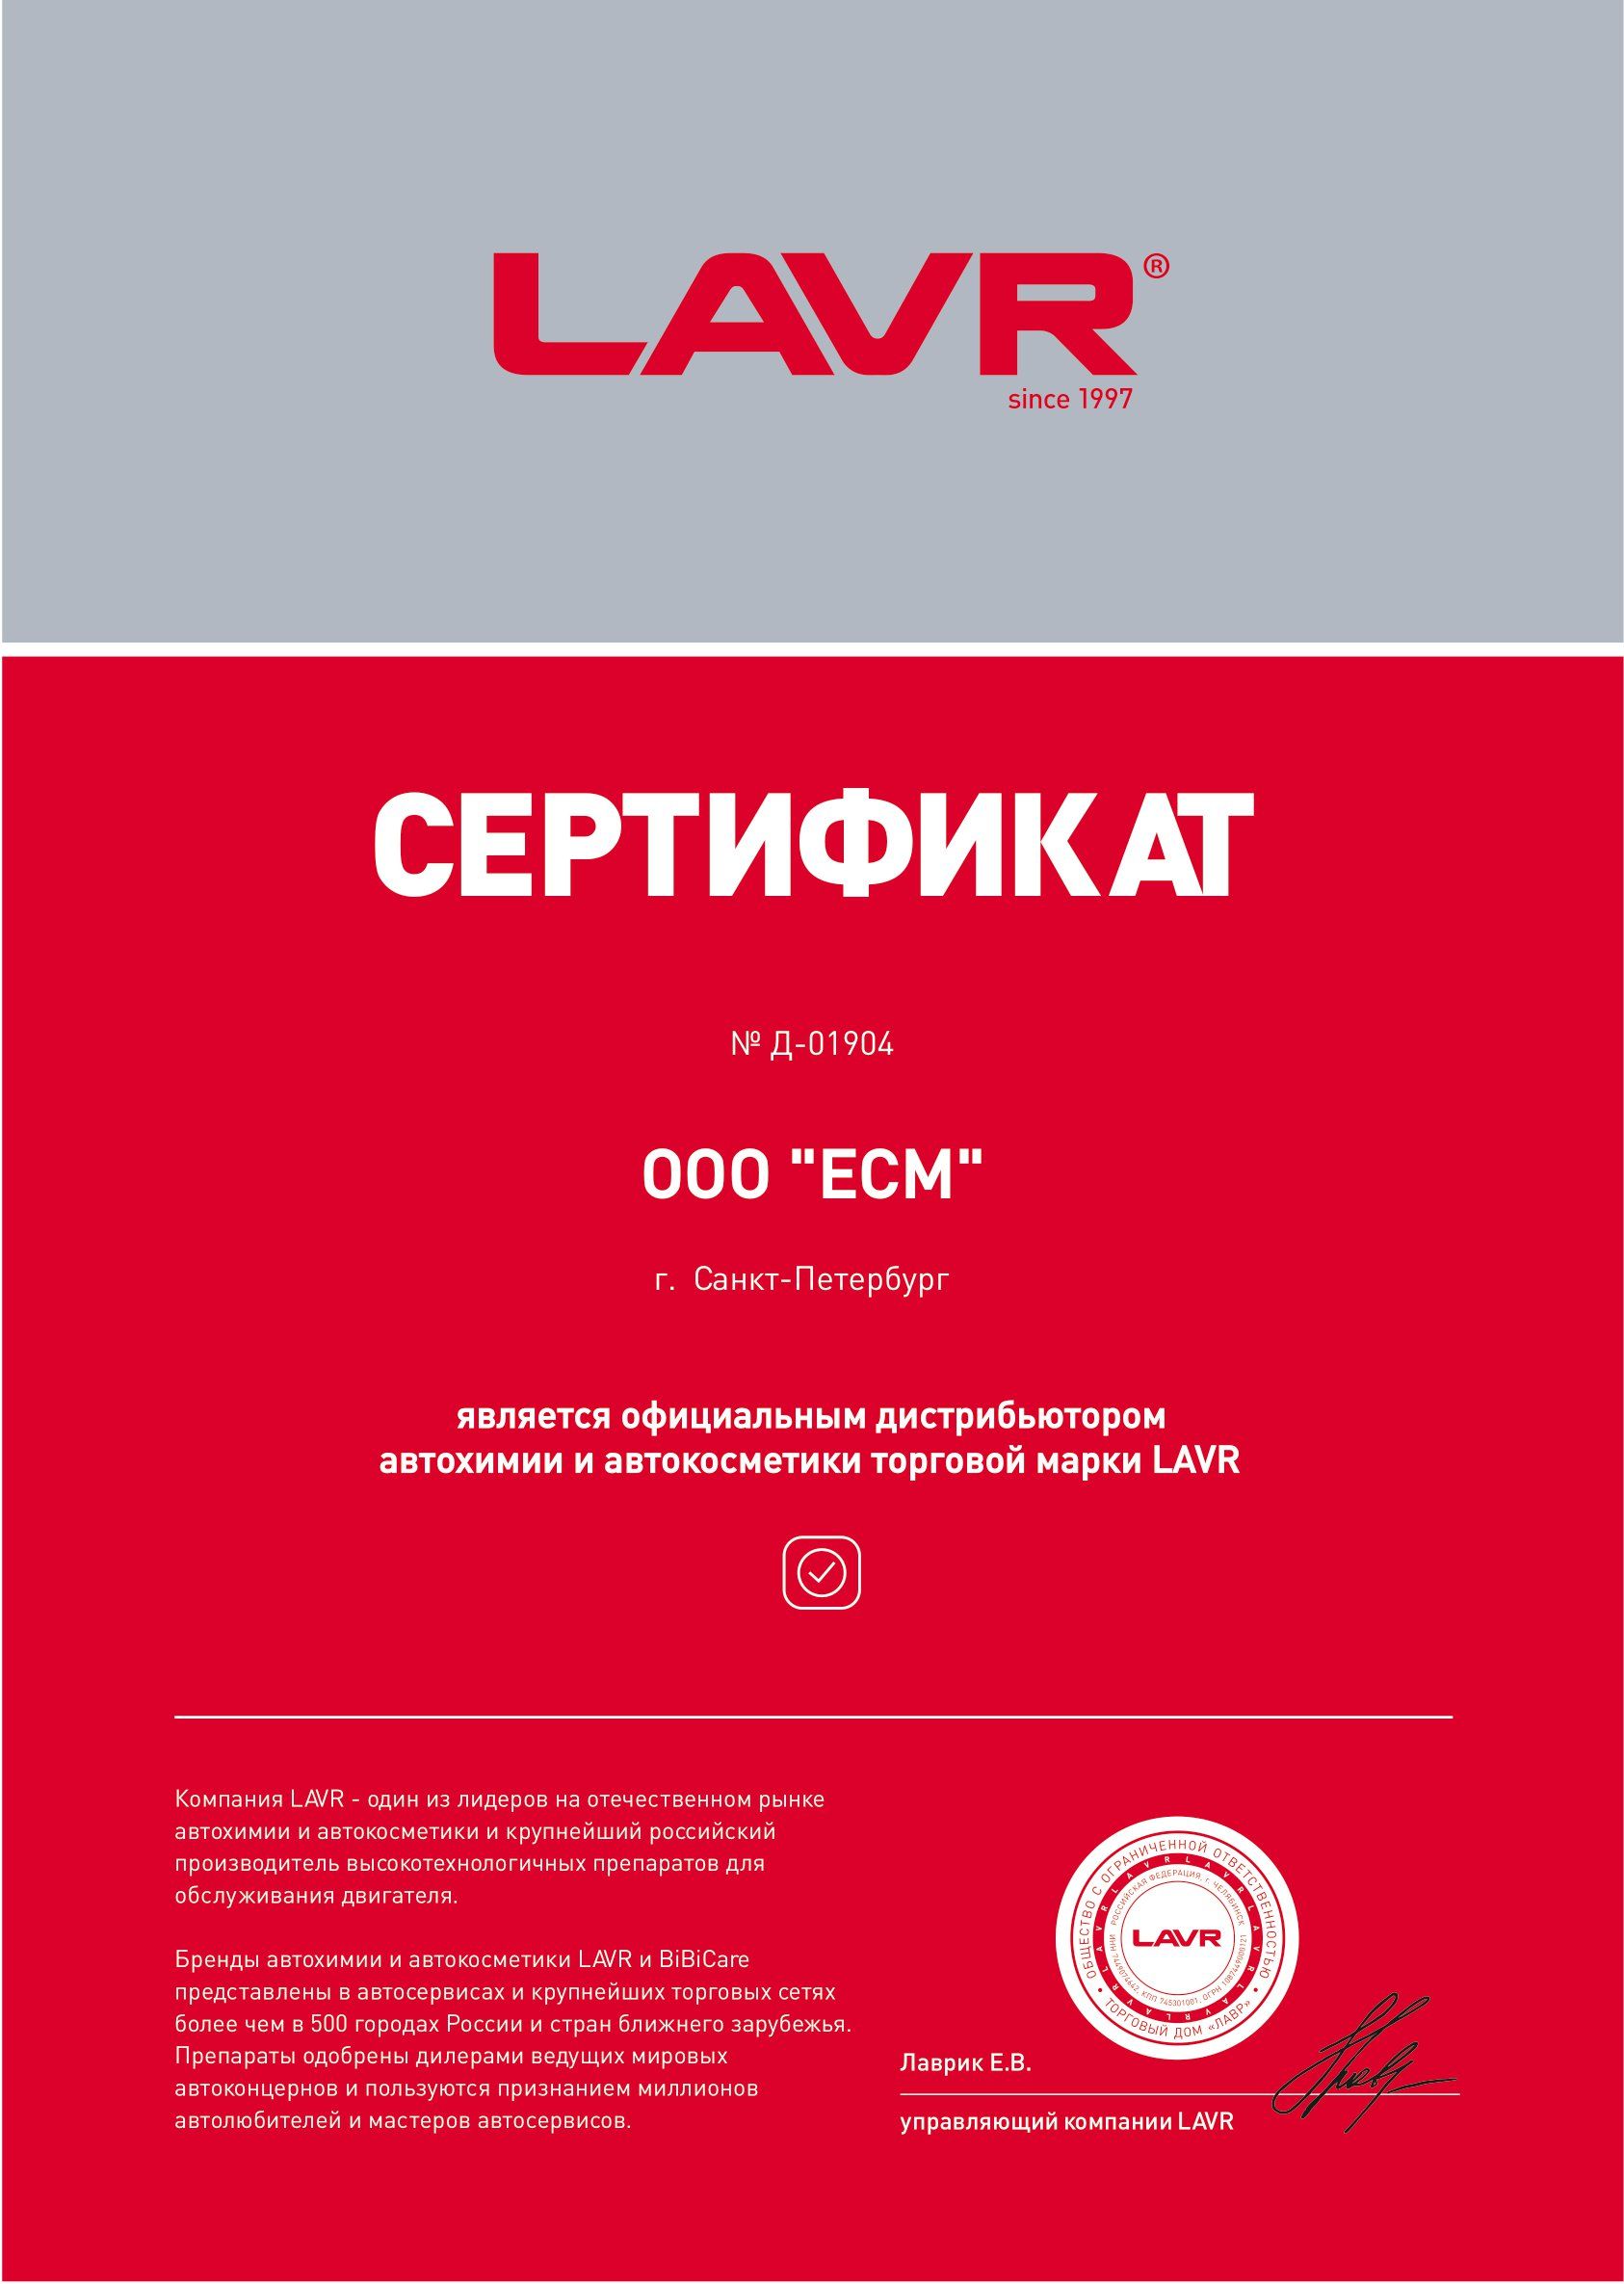 ООО "ЕСМ" подписало дистрибьюторский контракт по поставке продукции компании LAVR